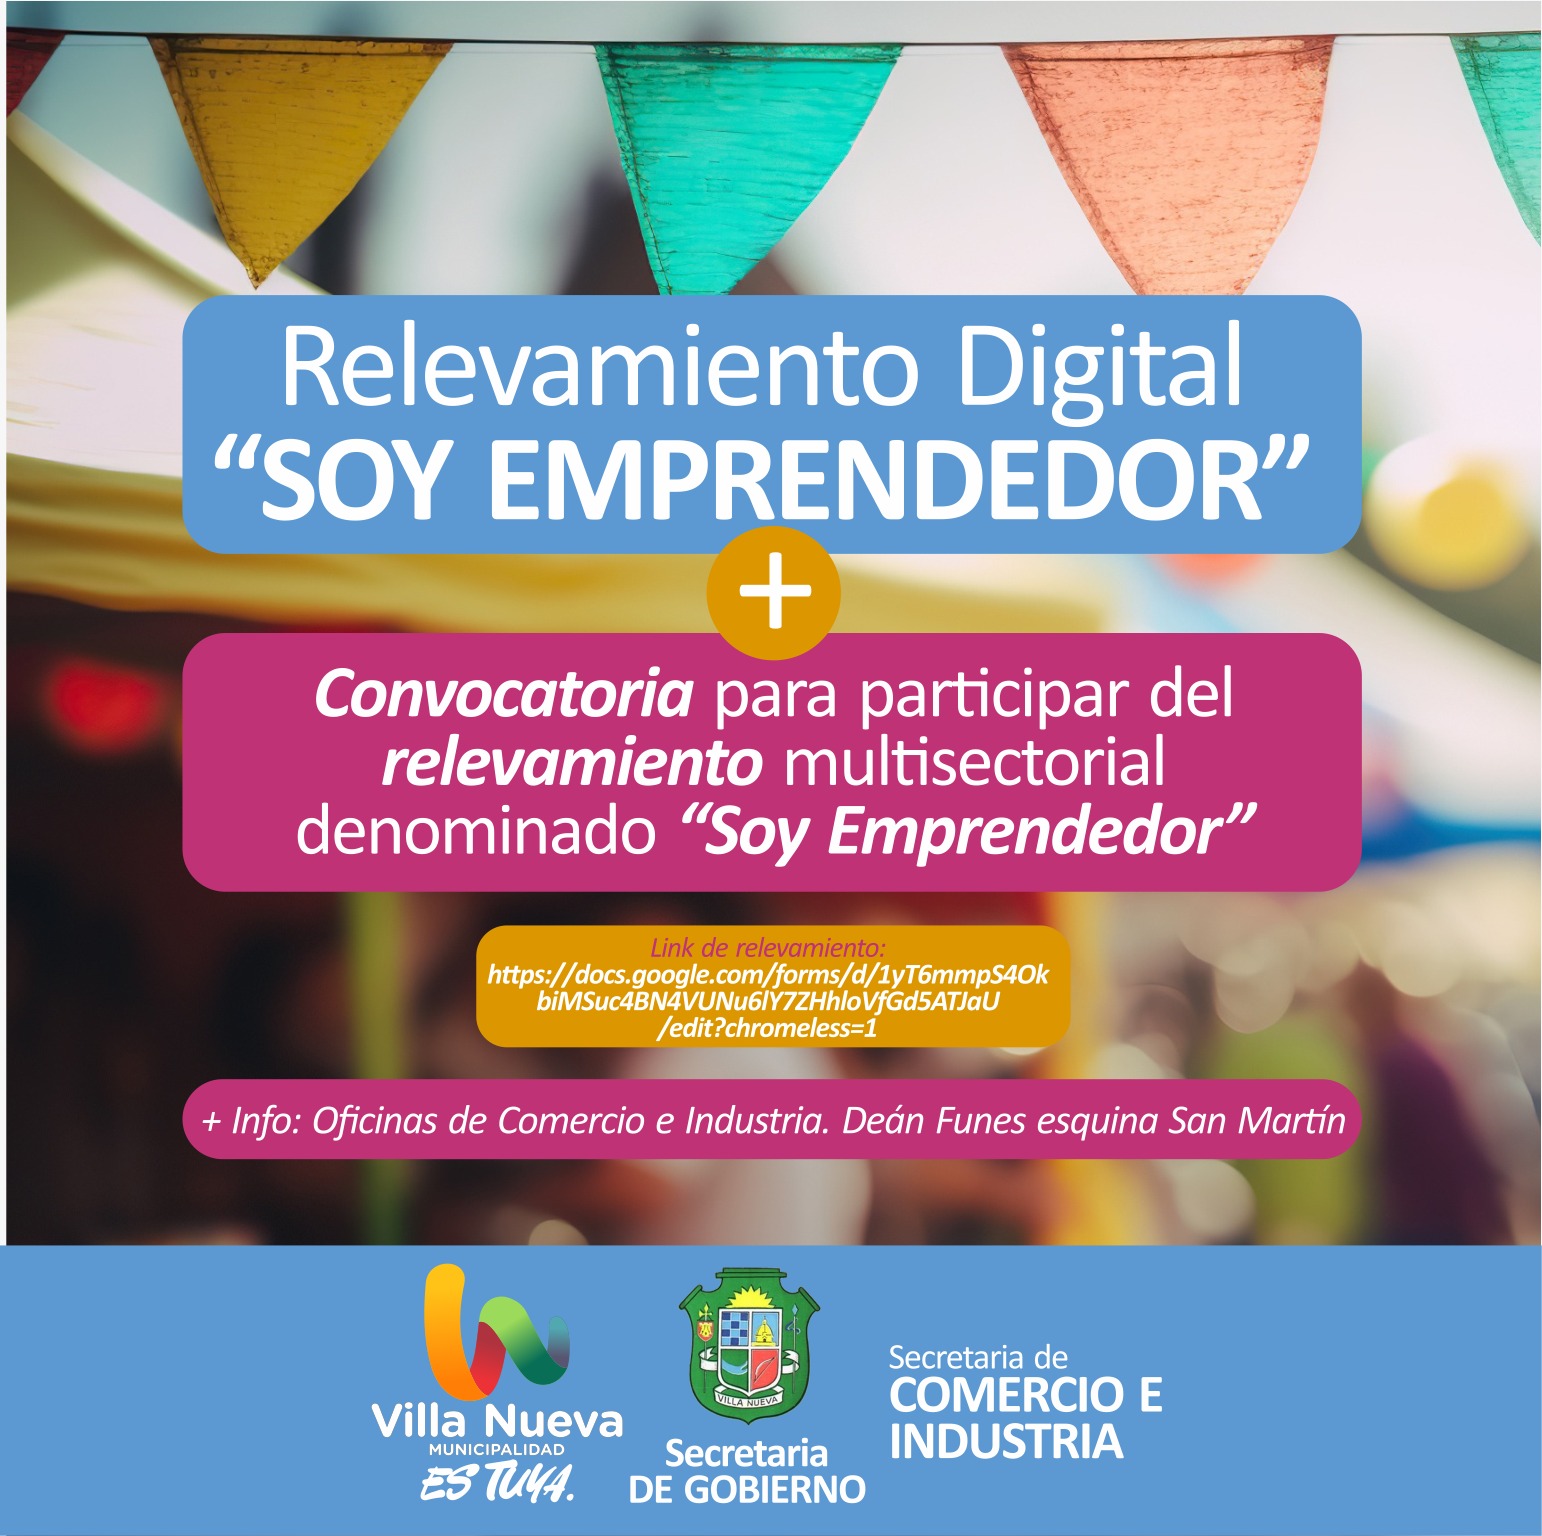 En Villa Nueva inició el relevamiento digital “Soy Emprendedor”